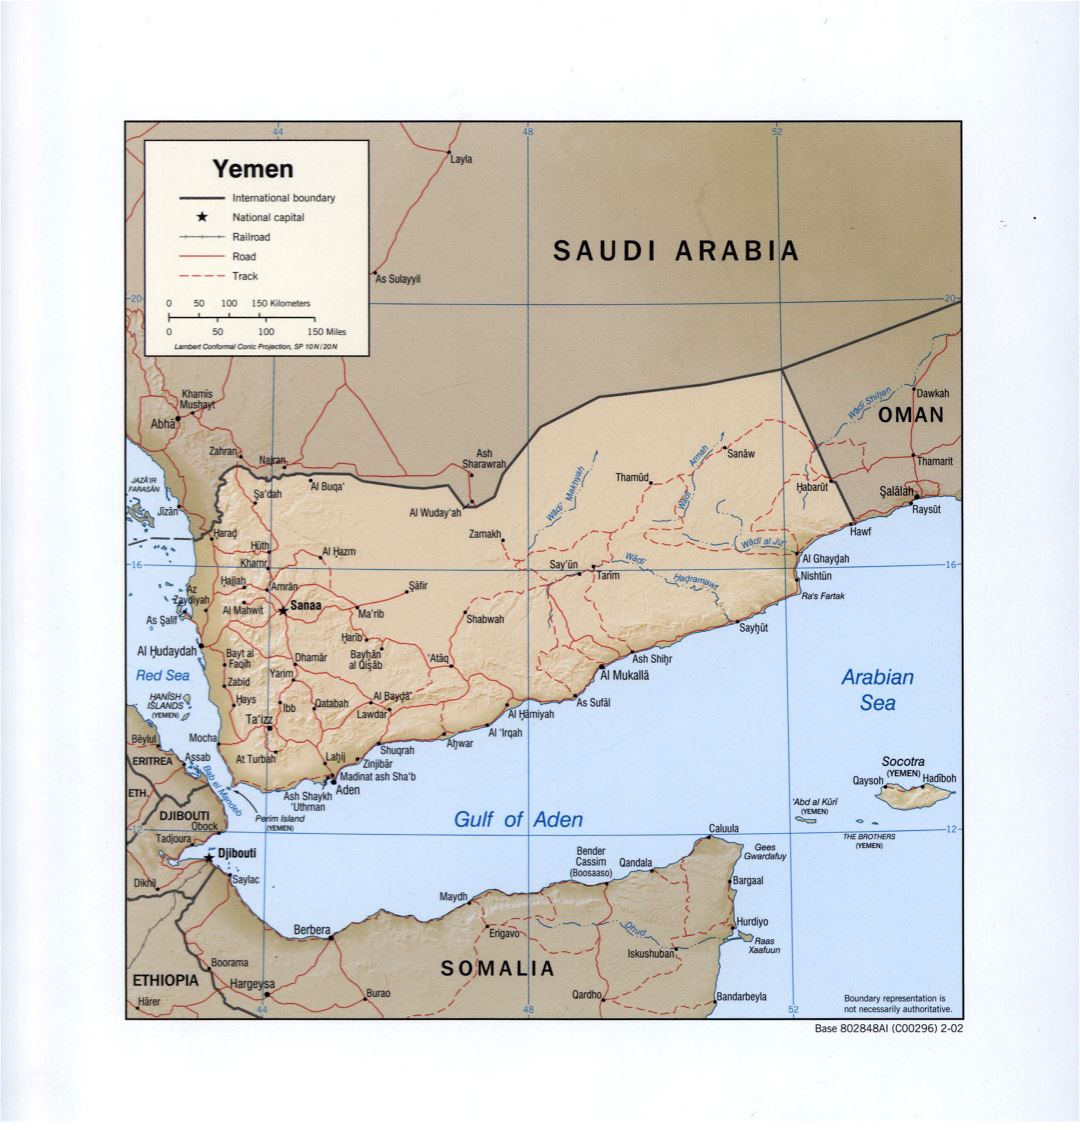 Grande detallado mapa político de Yemen con socorro, carreteras, ferrocarriles y principales ciudades - 2002